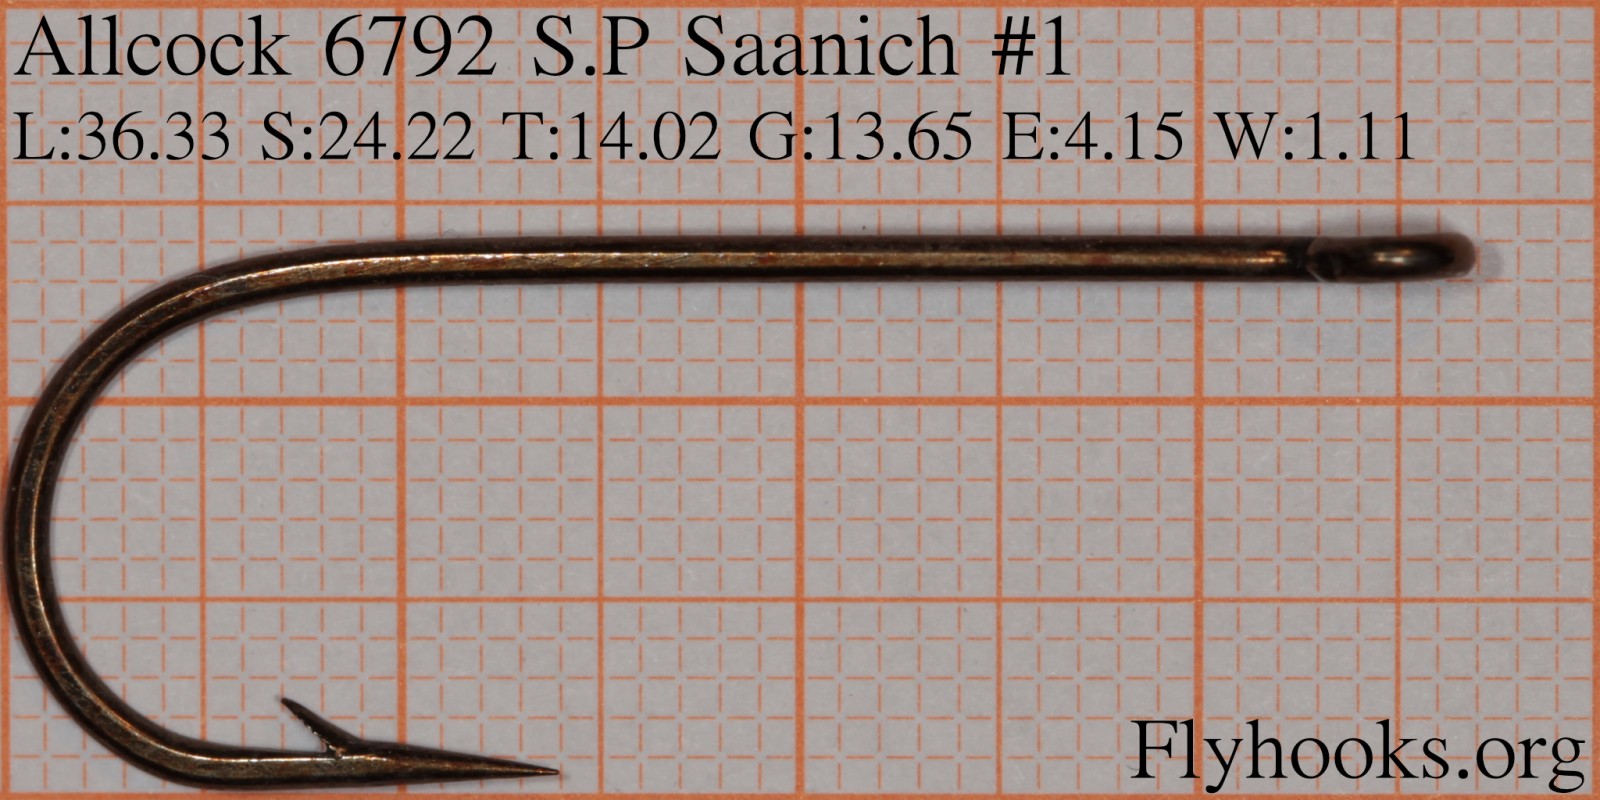 6792 S.P Saanich